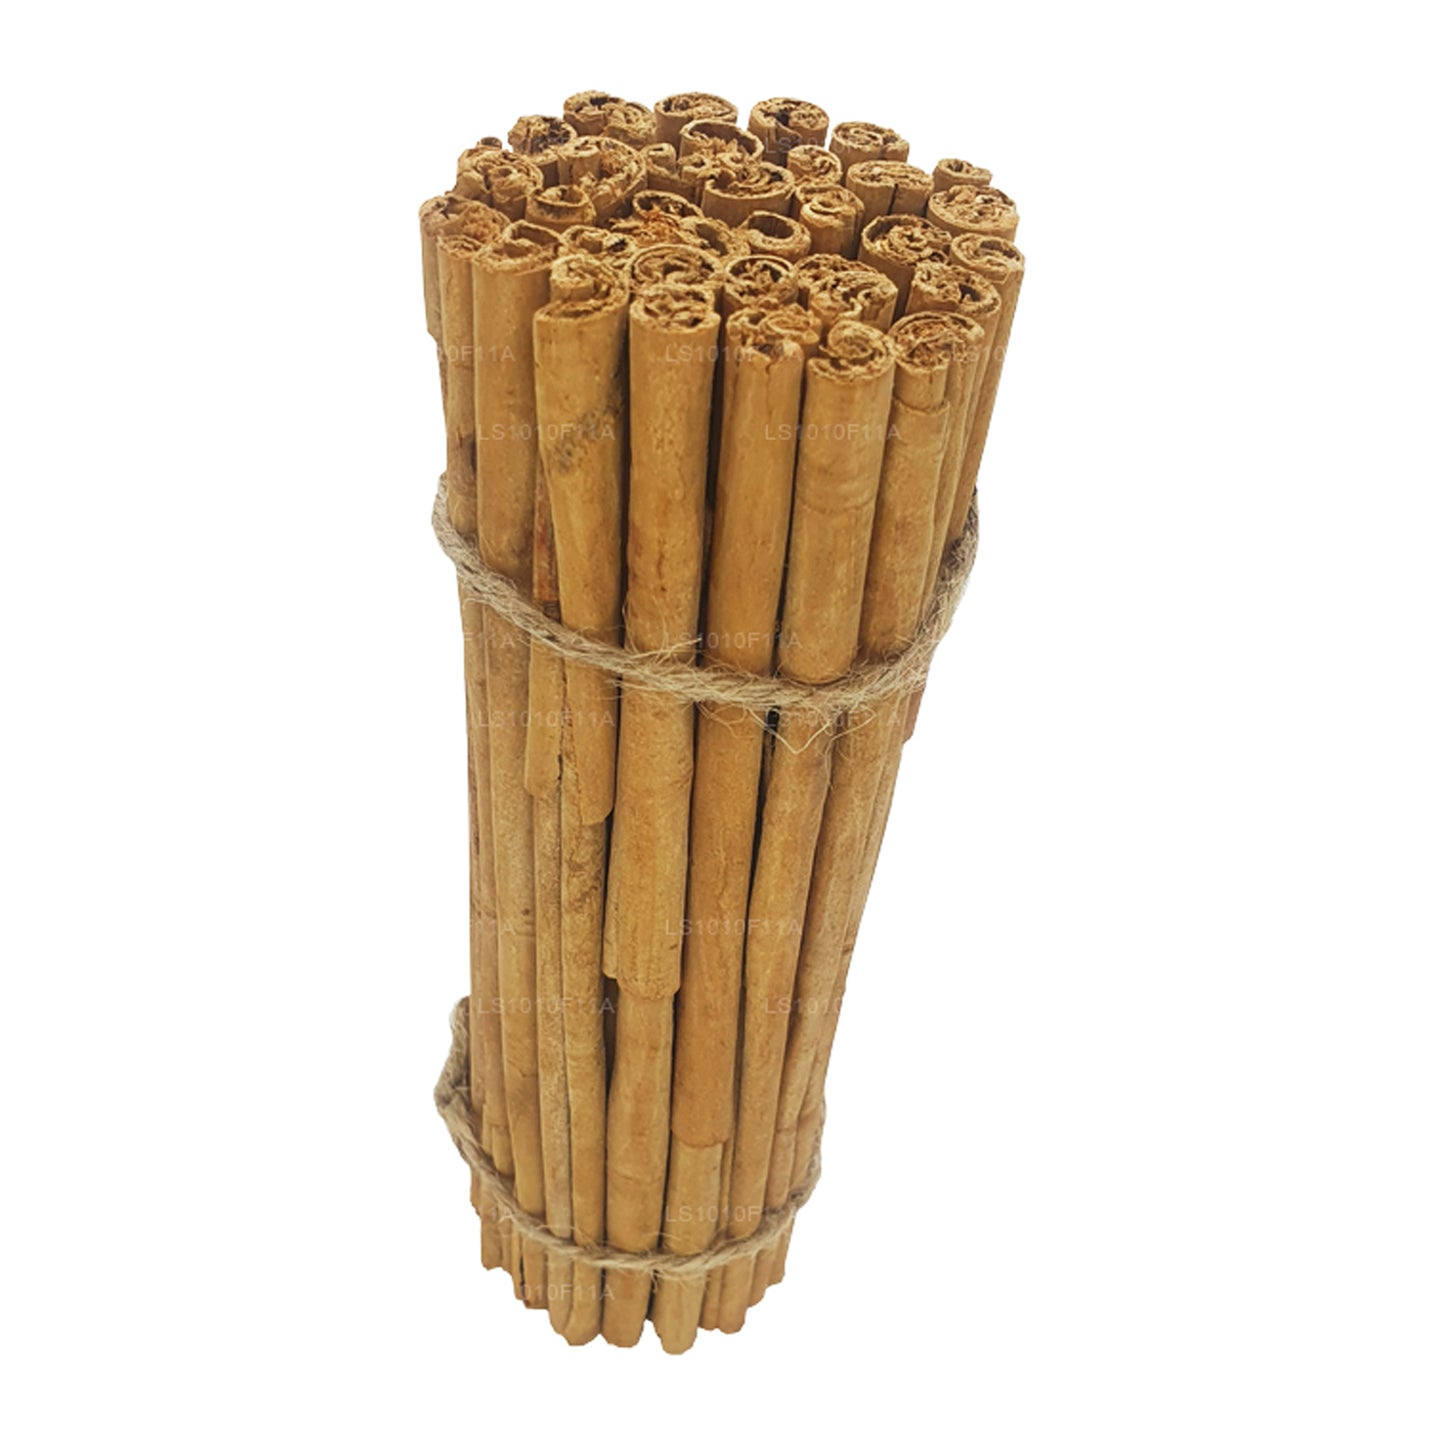 Lakpura „C5 Extra Special” Grade Ceylon True Cinnamon Barks Pack